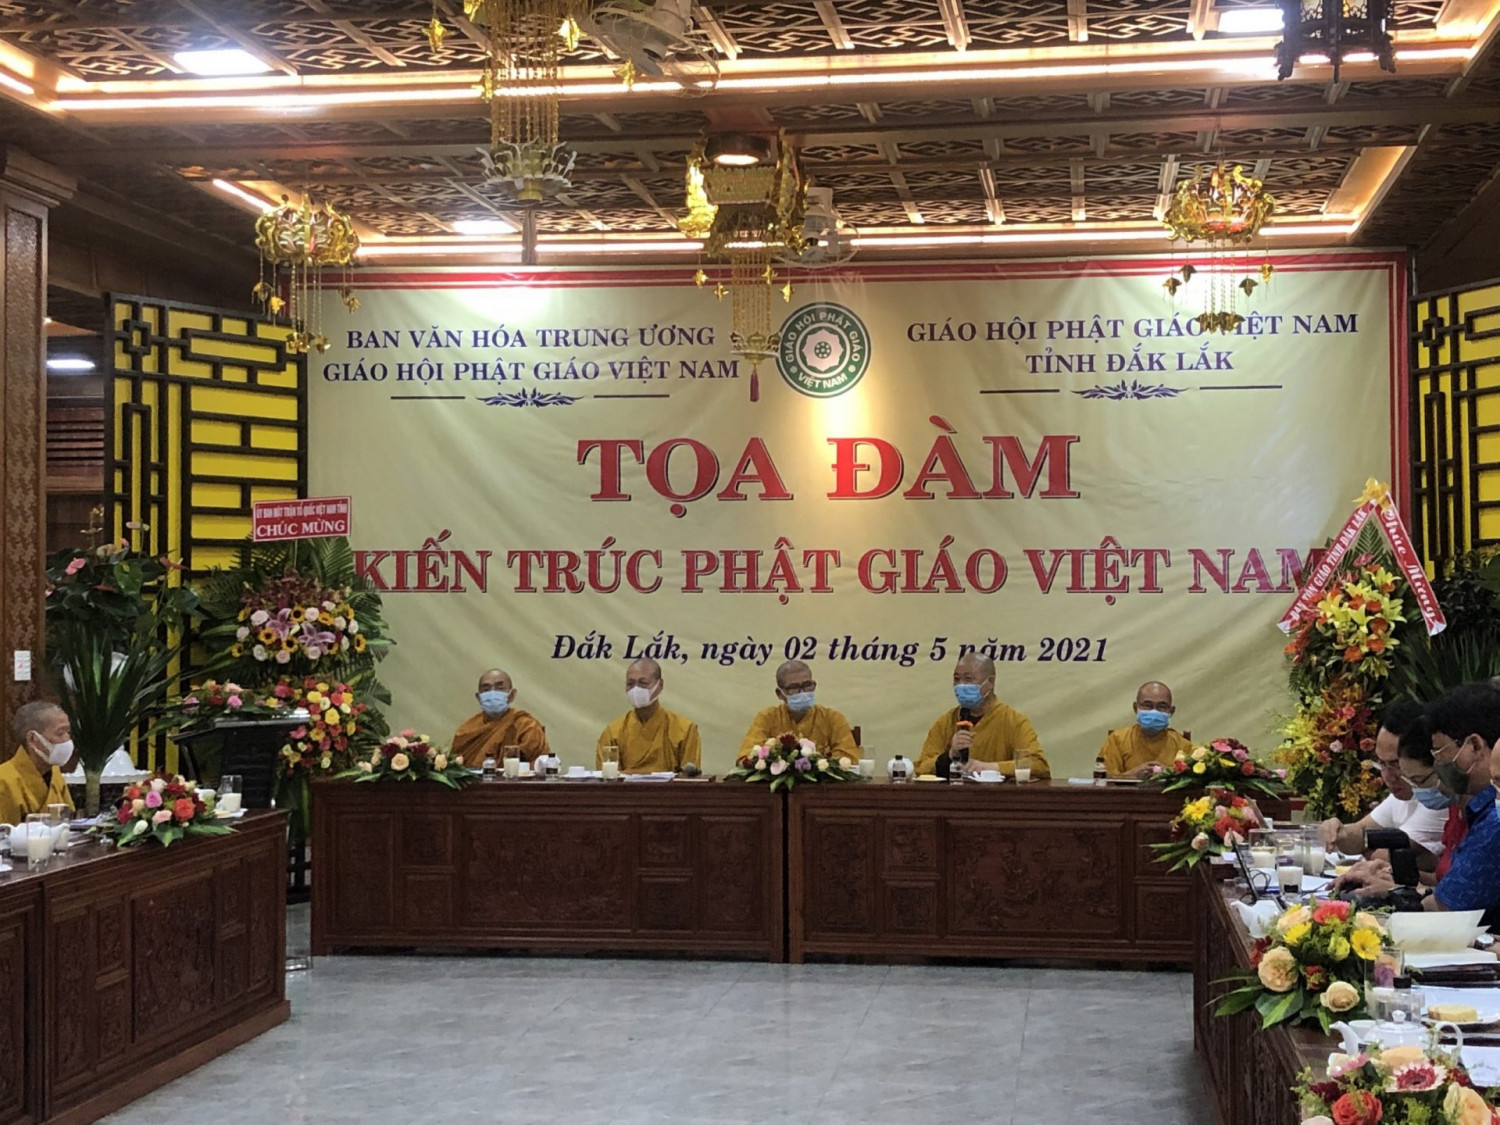 Ban văn hóa Trung ương GHPGVN tọa đàm: “Đề án di sản kiến trúc tại tỉnh Đắk Lắk”